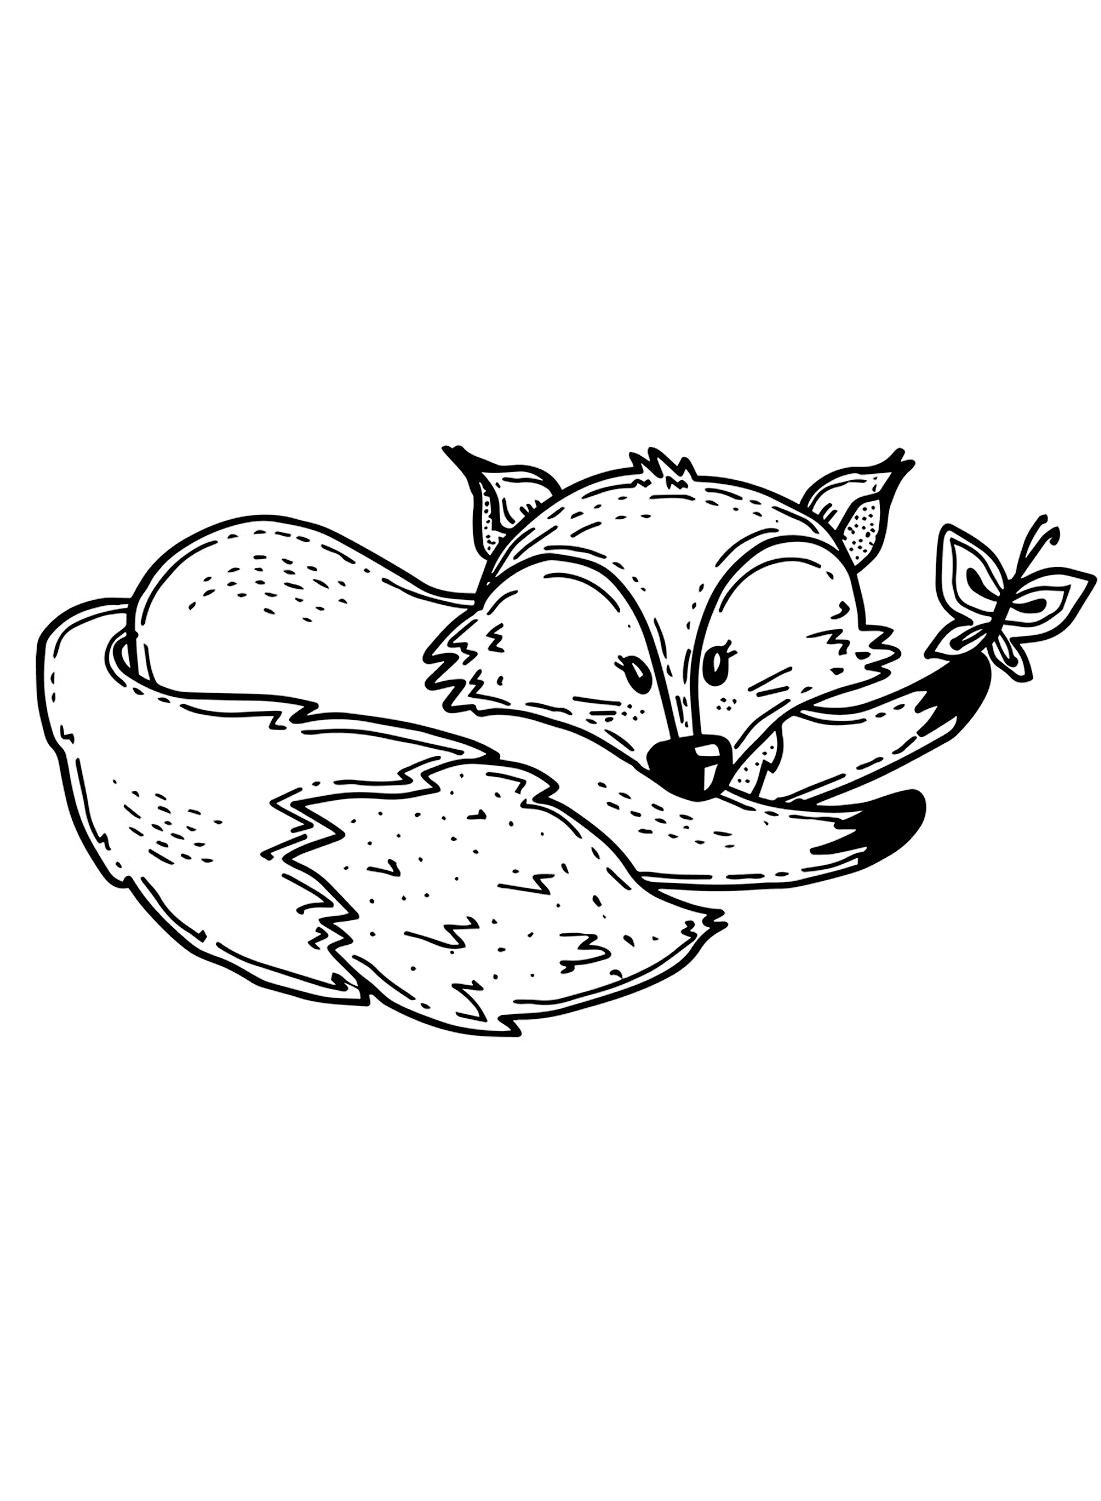 Een trieste vosfoto van Fox